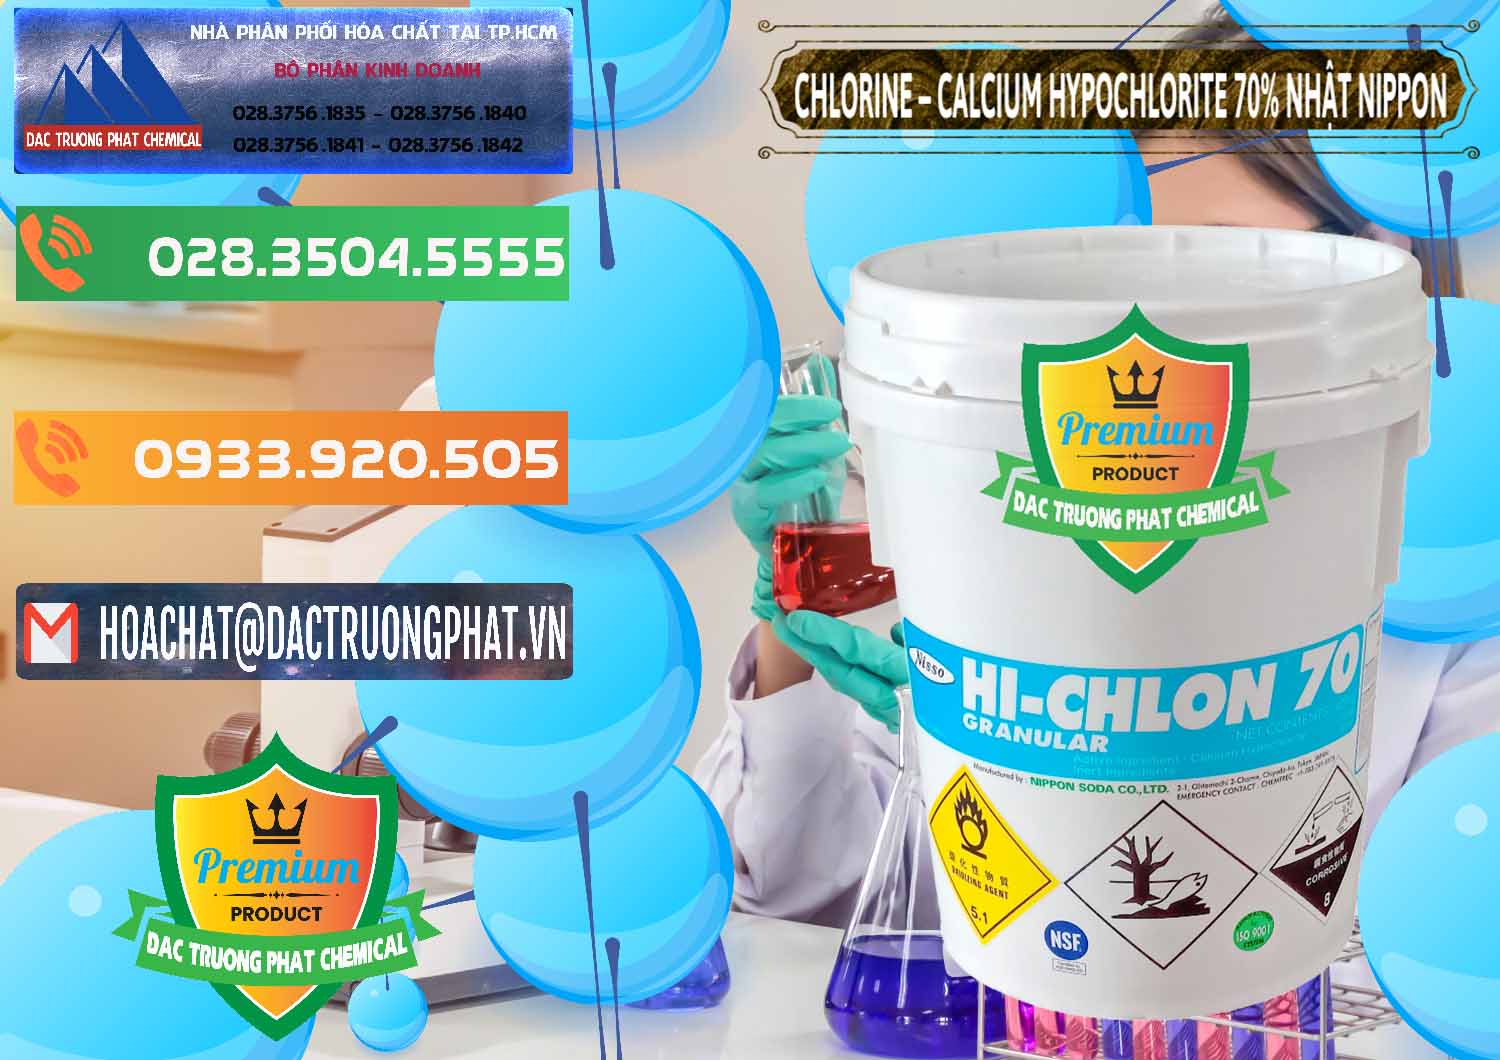 Cty chuyên kinh doanh và bán Clorin – Chlorine 70% Nippon Soda Nhật Bản Japan - 0055 - Cty chuyên kinh doanh - phân phối hóa chất tại TP.HCM - hoachatxulynuoc.com.vn